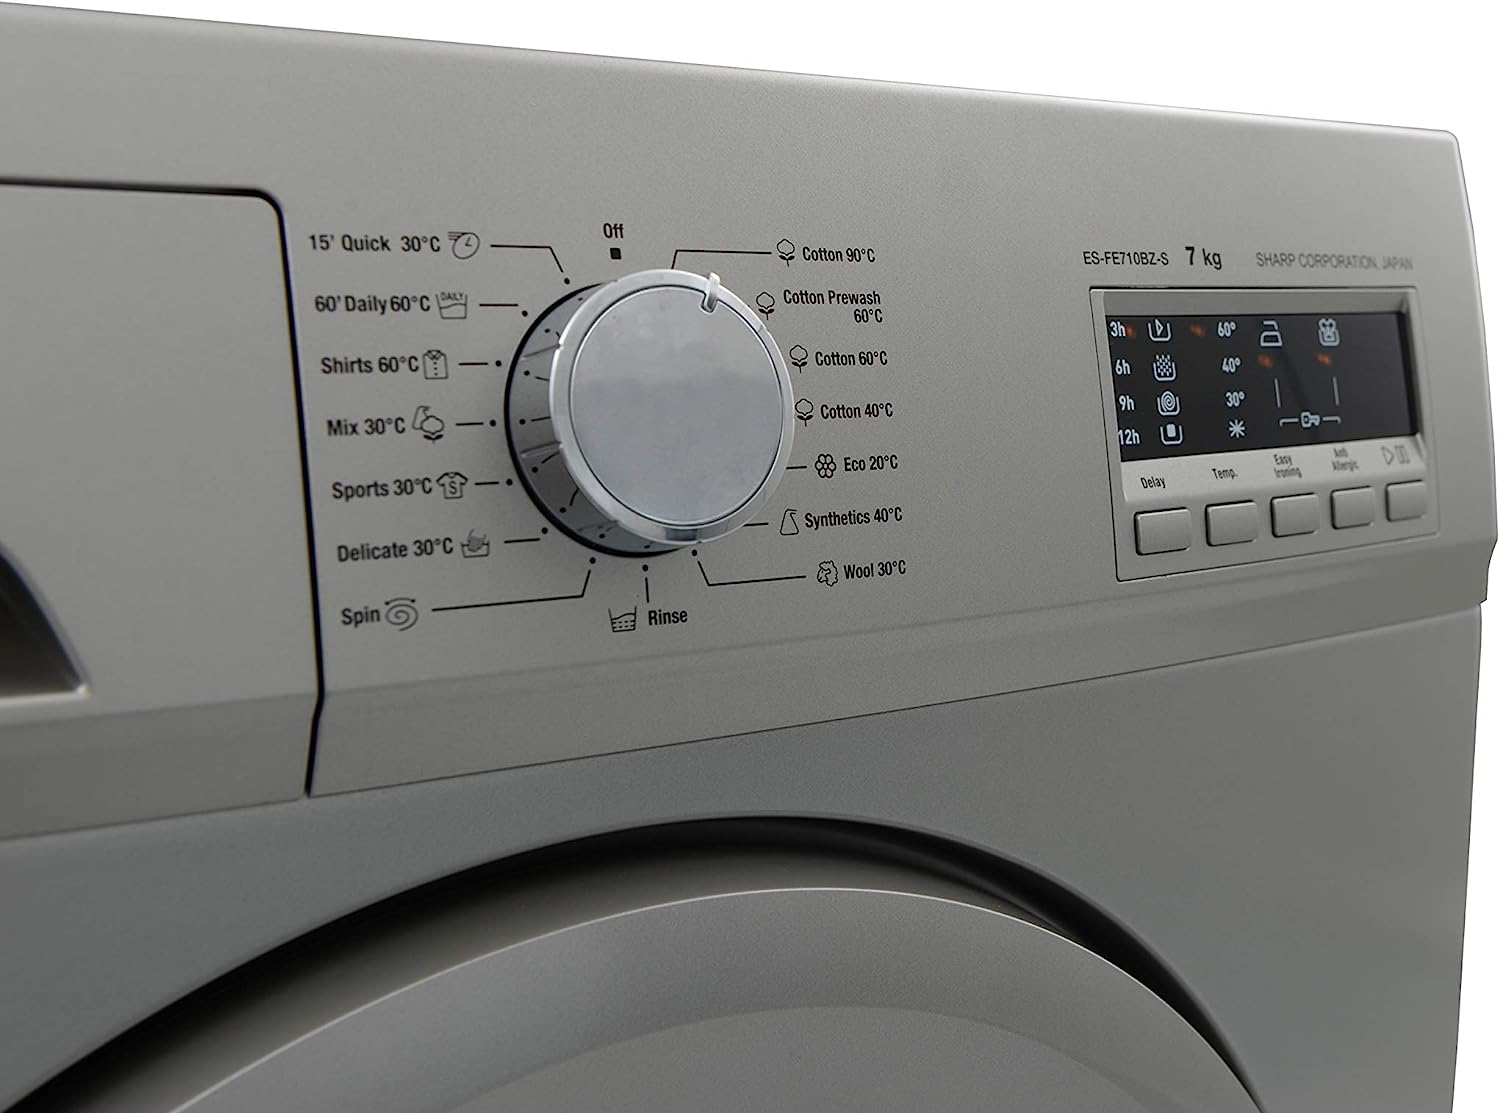 Sharp Washing Machine 7 Kg 1000 rpm - Silver